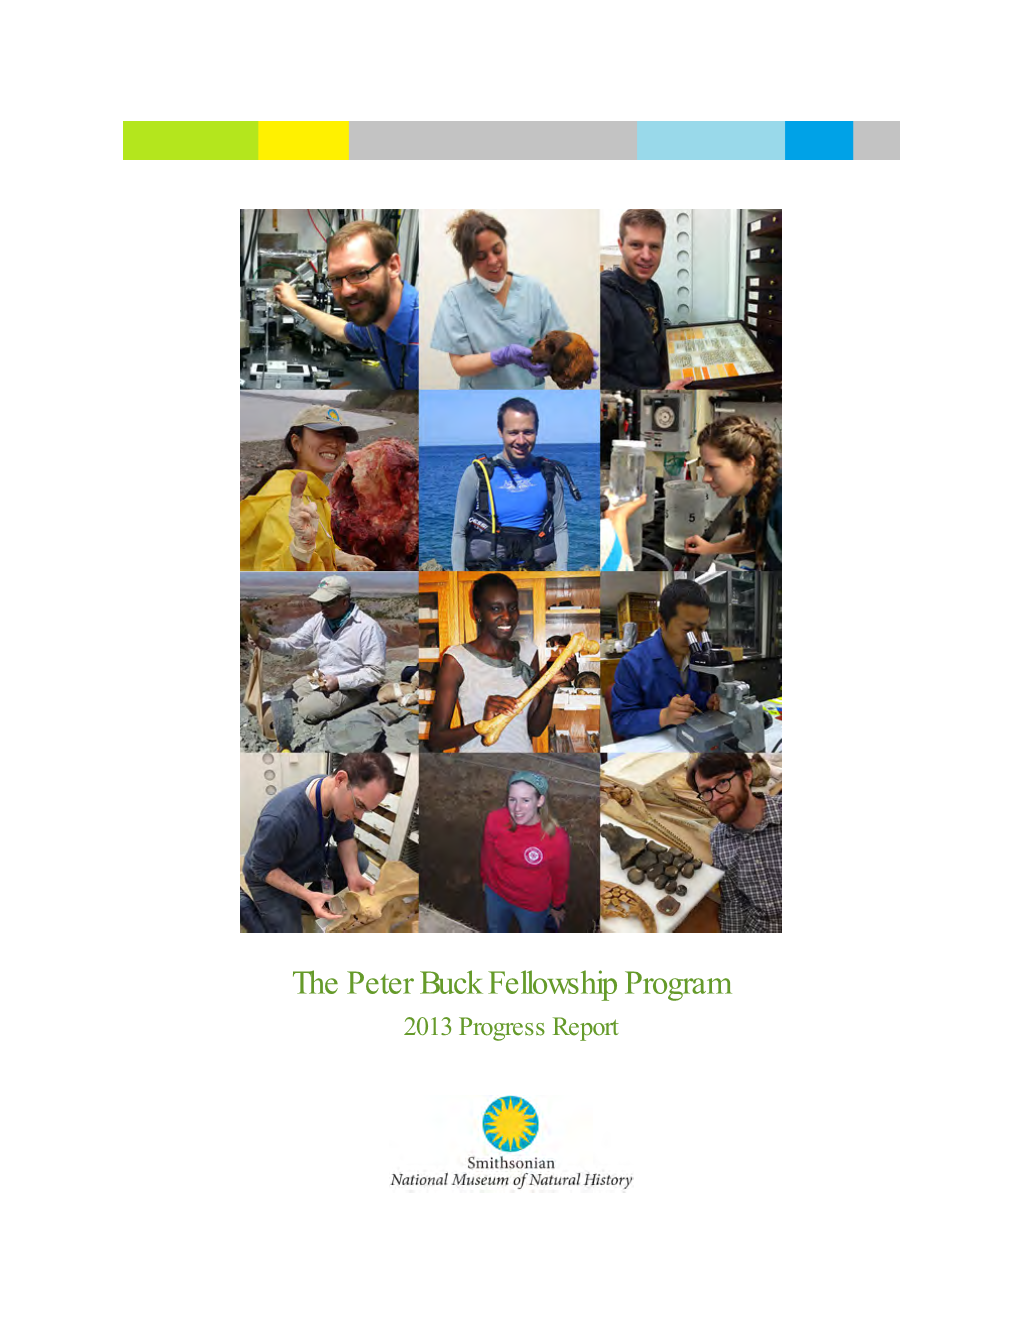 The Peter Buck Fellowship Program 2013 Progress Report